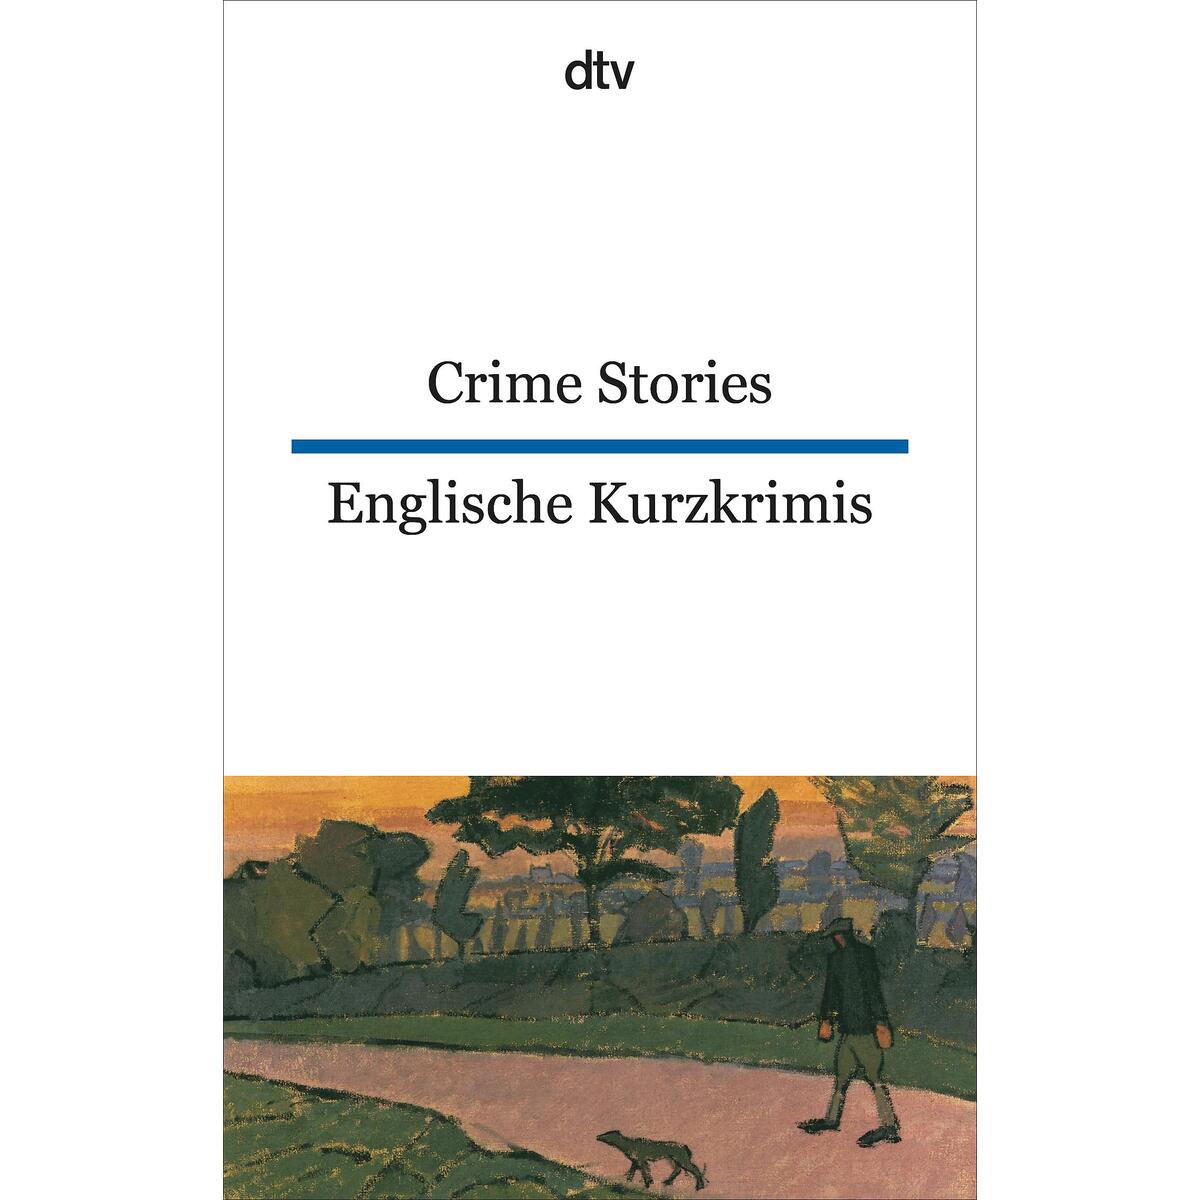 Englische Kurzkrimis / Crime Stories von dtv Verlagsgesellschaft